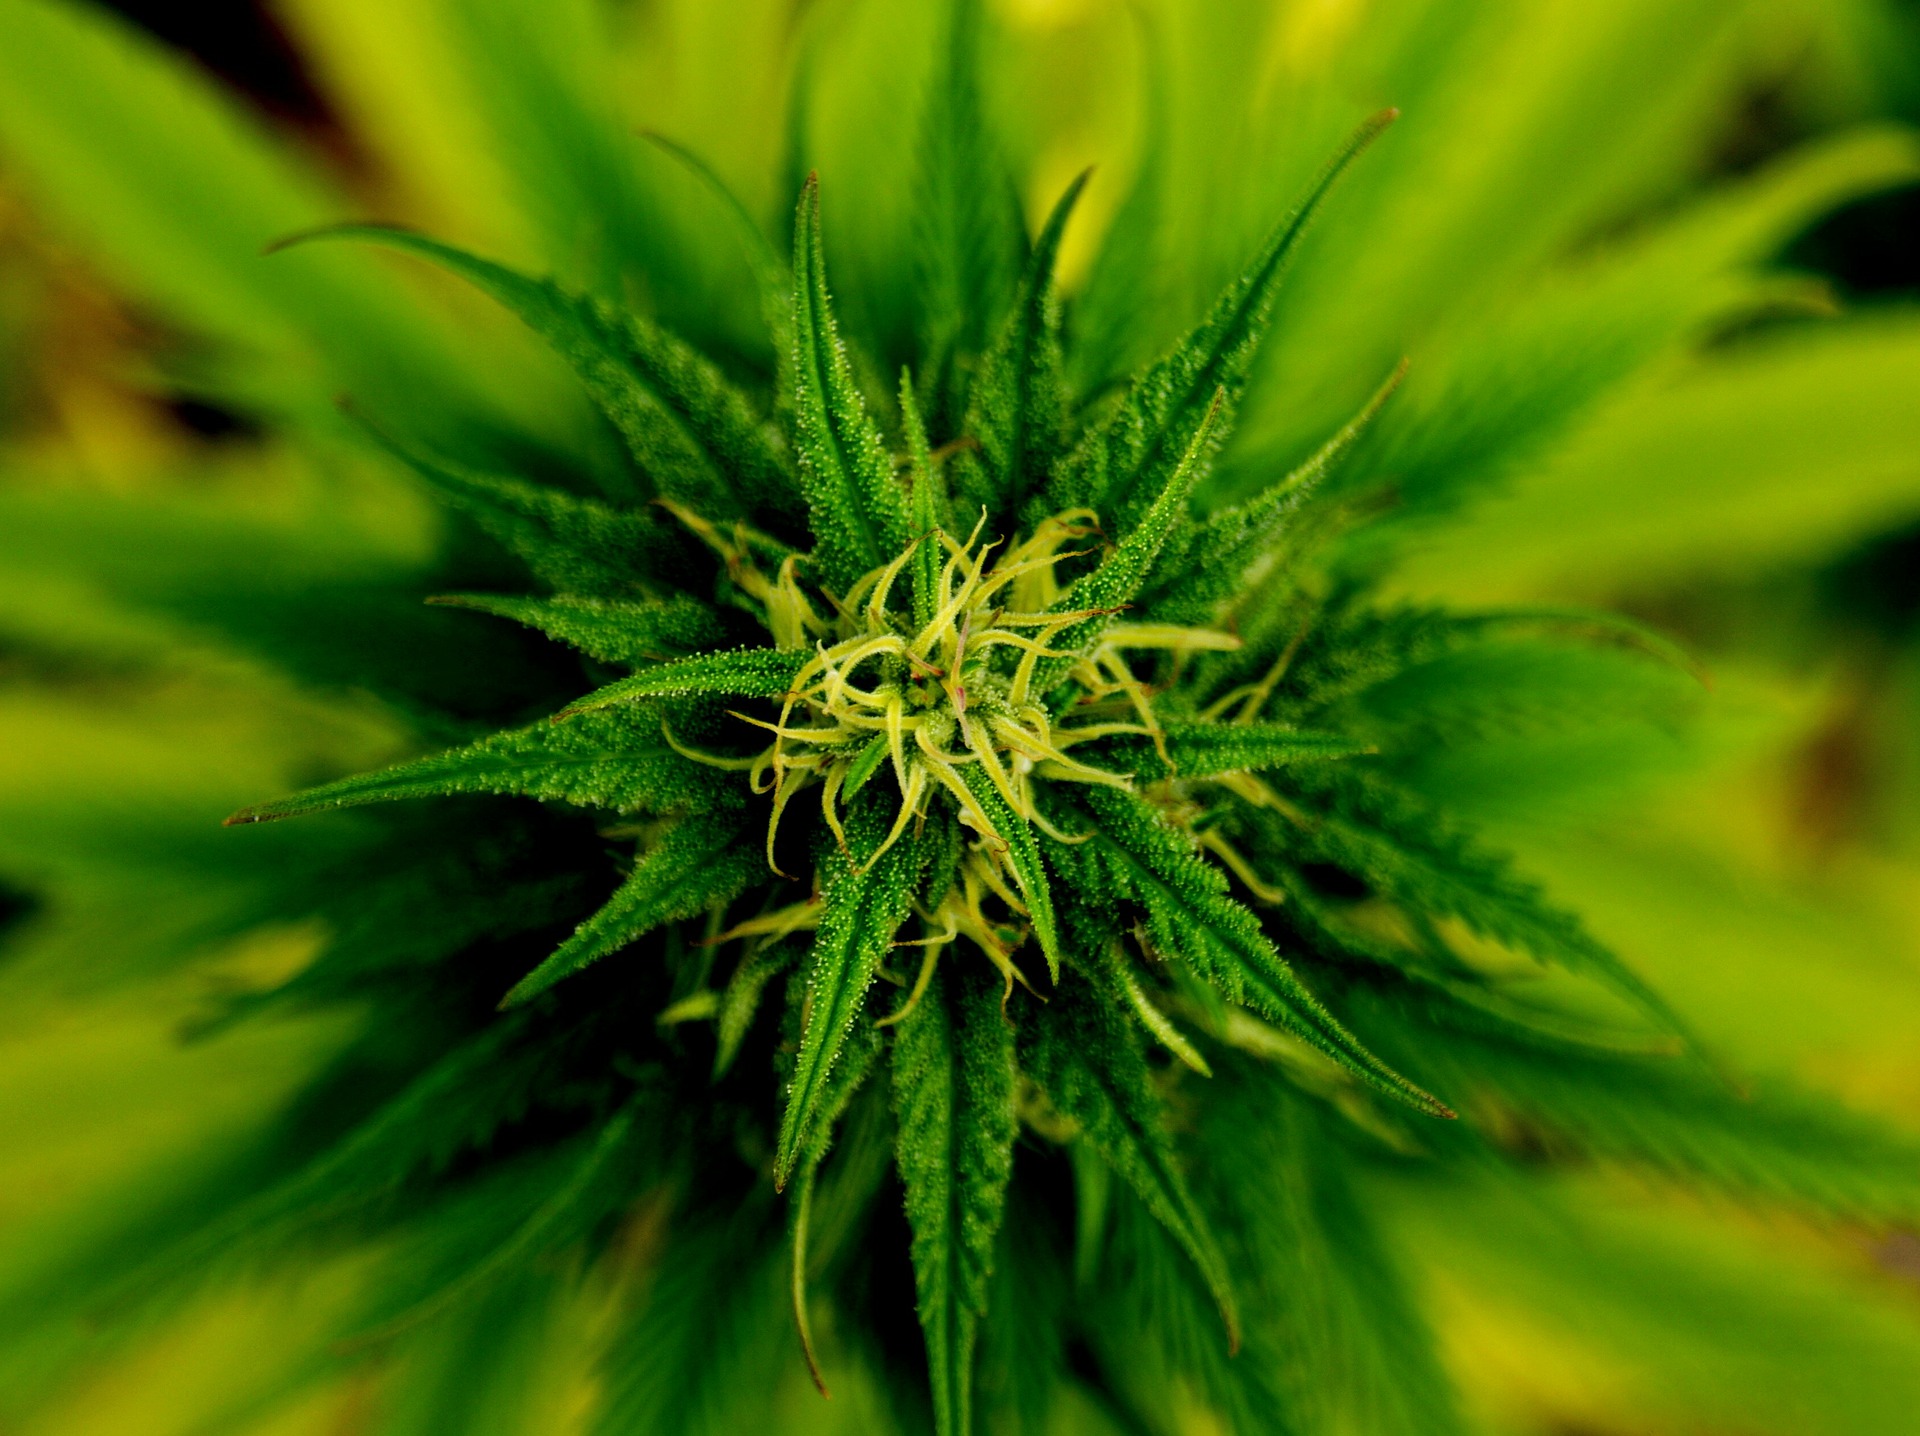 marijuana bud